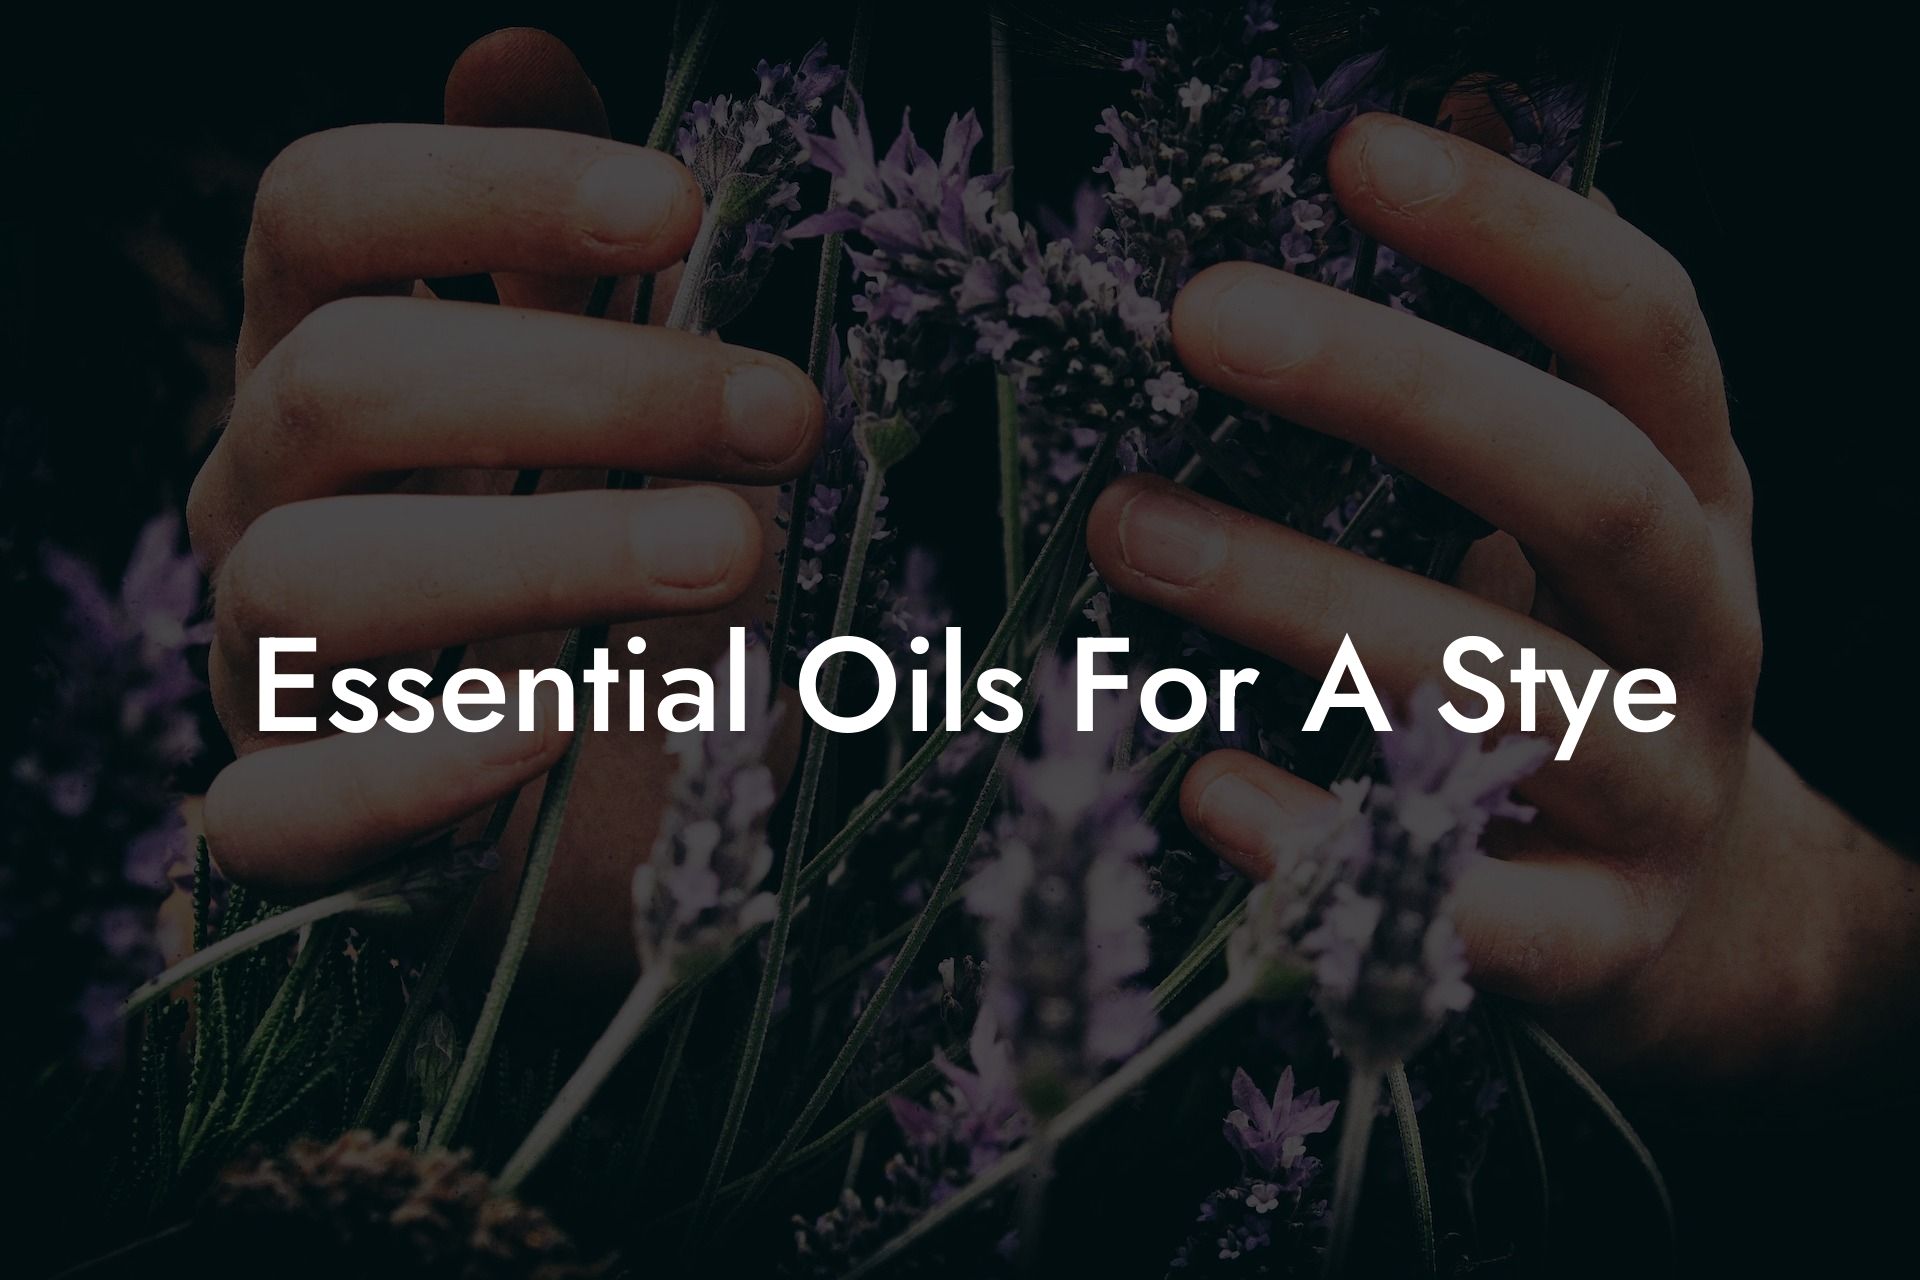 Essential Oils For A Stye